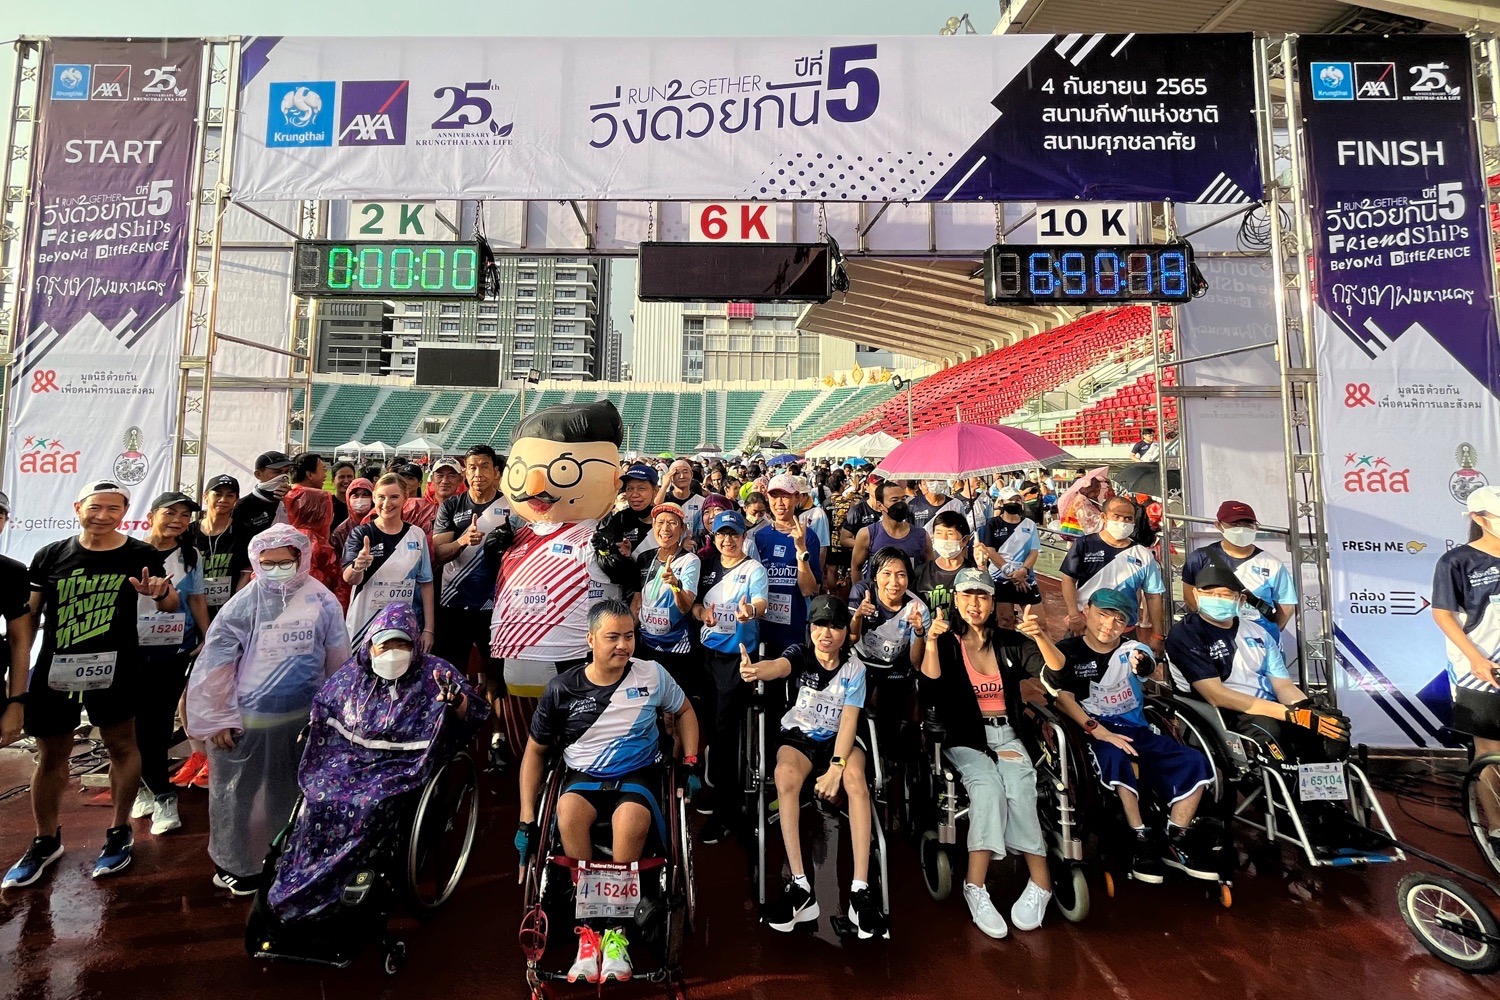 กรุงไทย-แอกซ่า ประกันชีวิต จับมือพันธมิตรหลายภาคส่วน ชวนคนพิการ-ไม่พิการร่วมงาน “วิ่งด้วยกัน – Run2gether” ครั้งที่ 5 Friendships Beyond Difference มิตรภาพเหนือความแตกต่าง